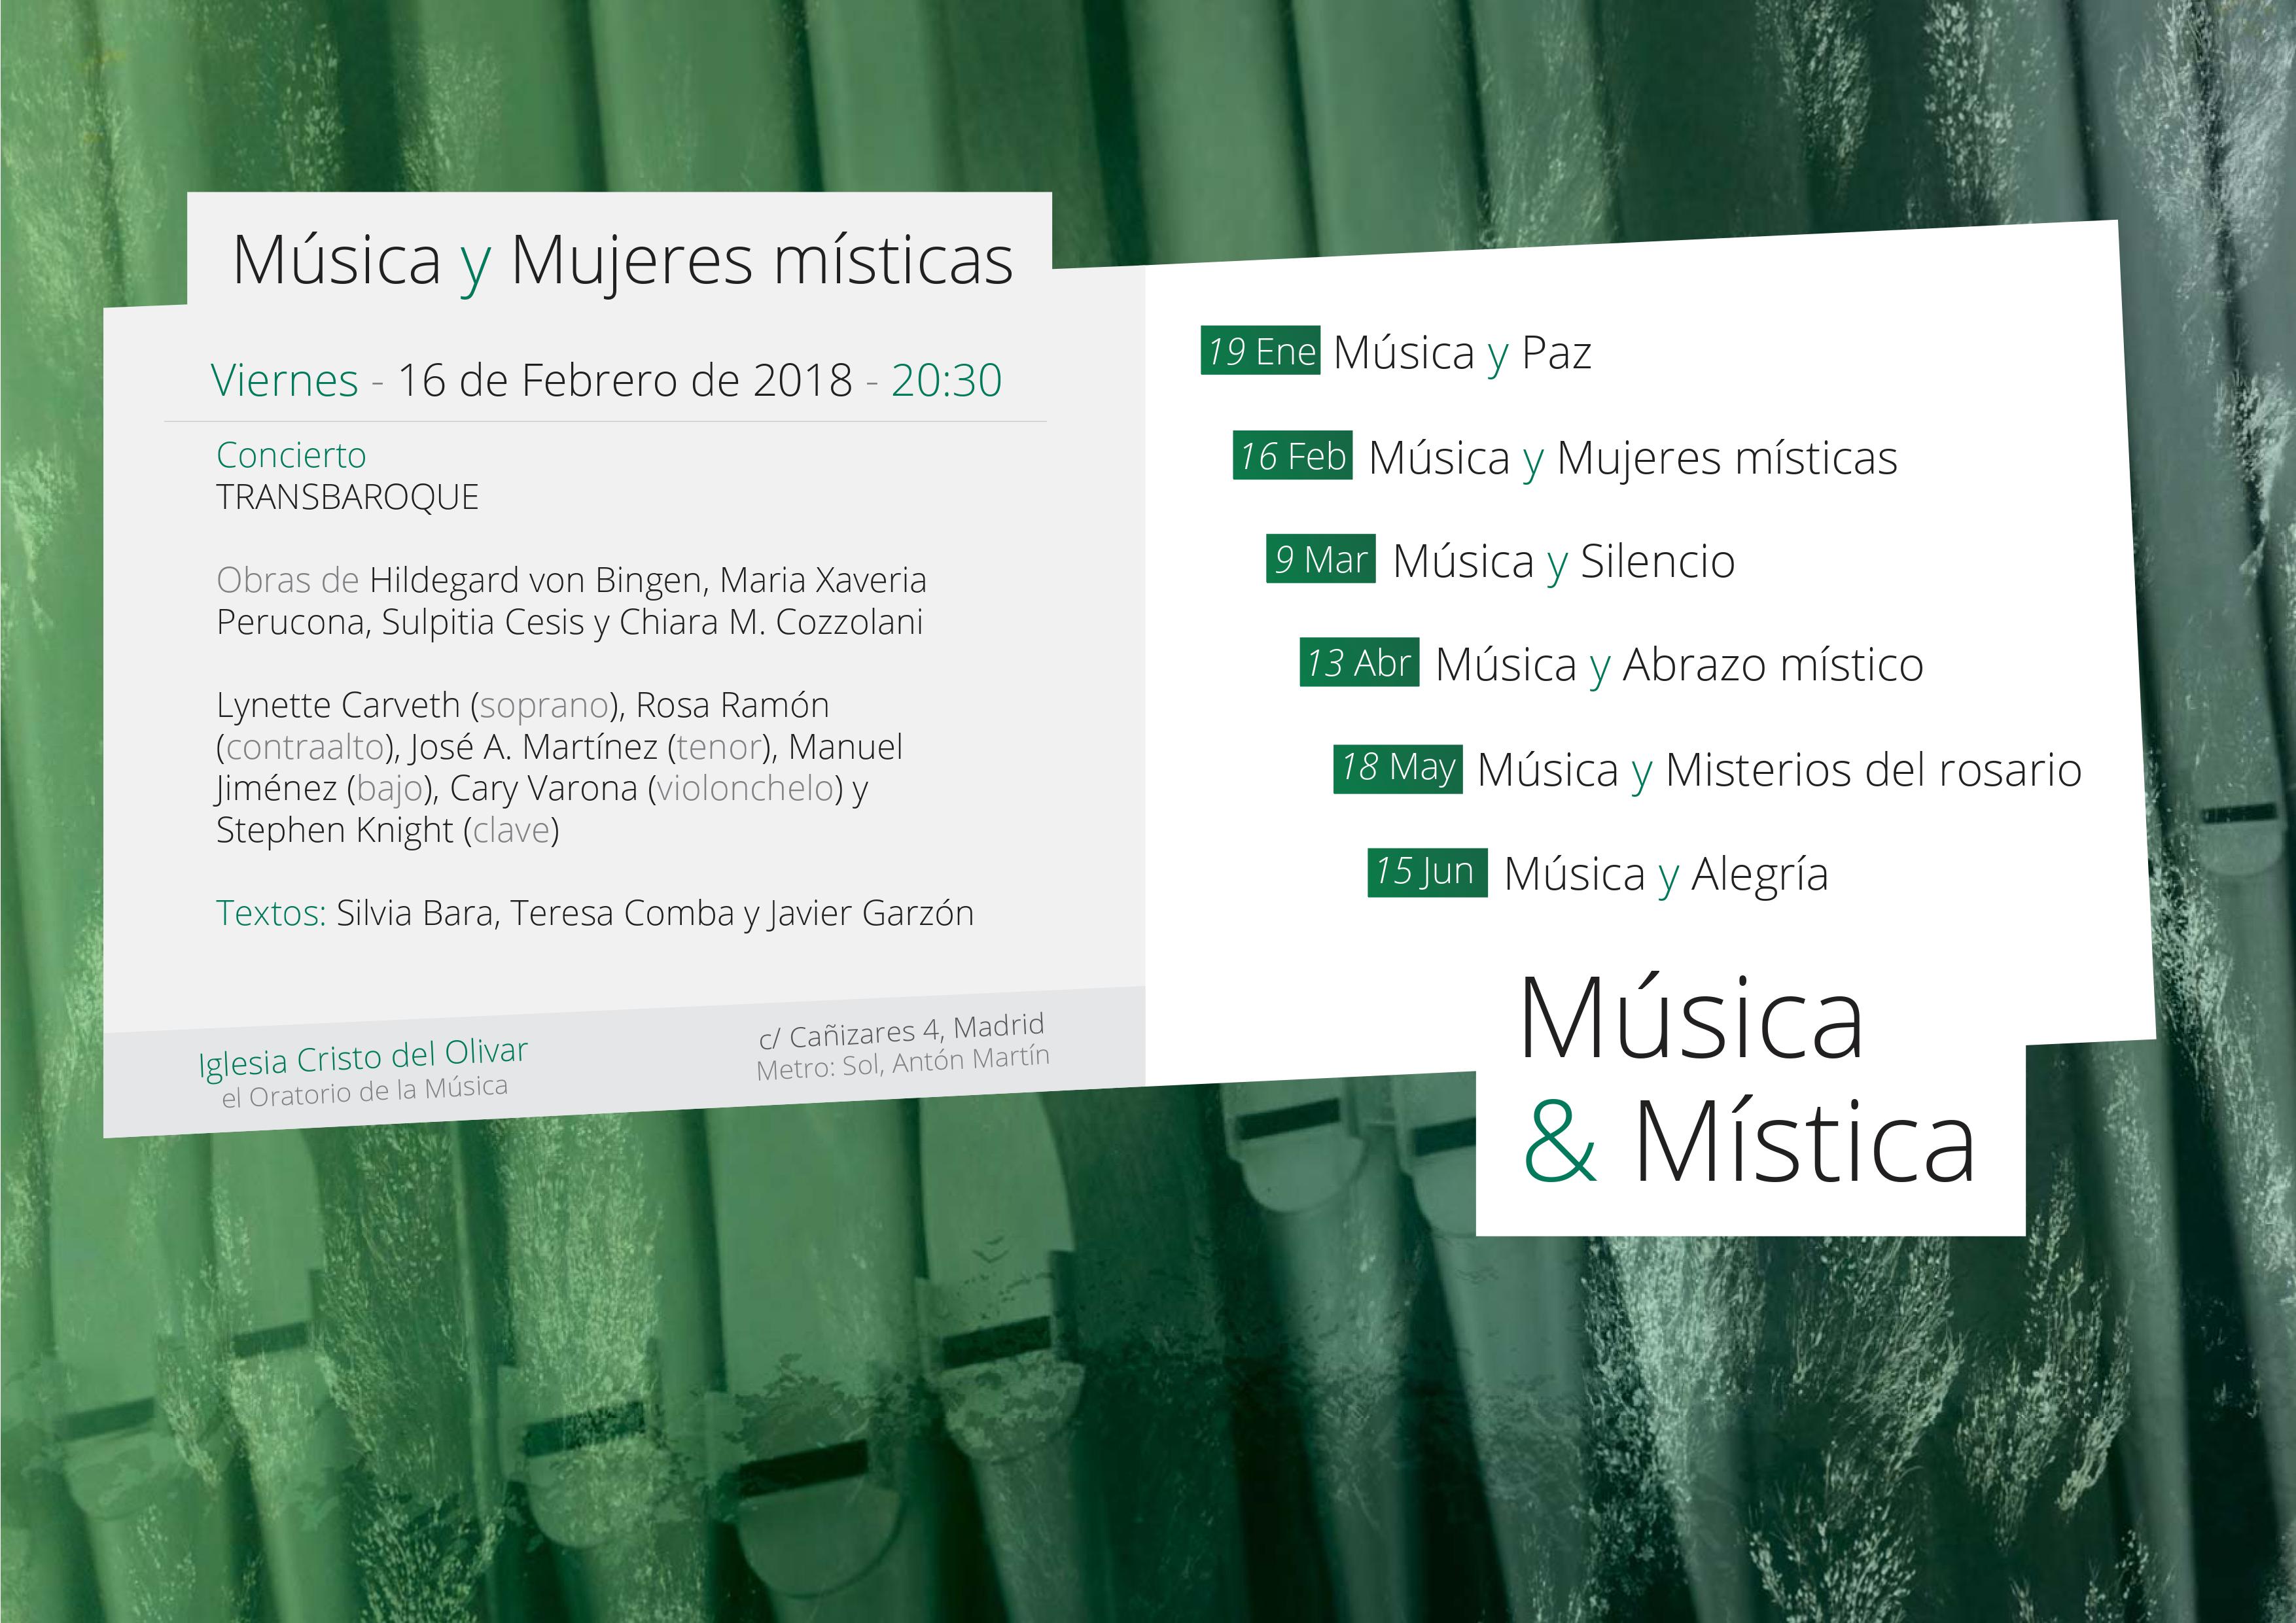 Ciclo "Música y Mística": Música y mujeres místicas